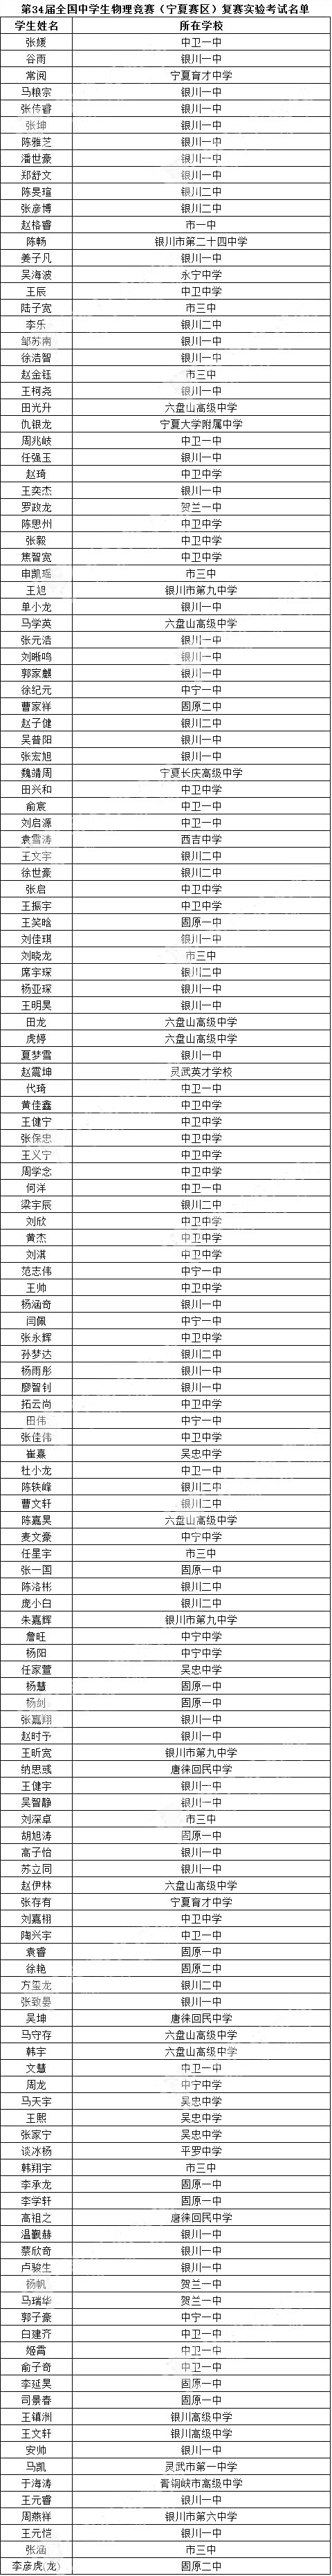 宁夏省2017年34届全国中学生物理复赛实验考试名单公布